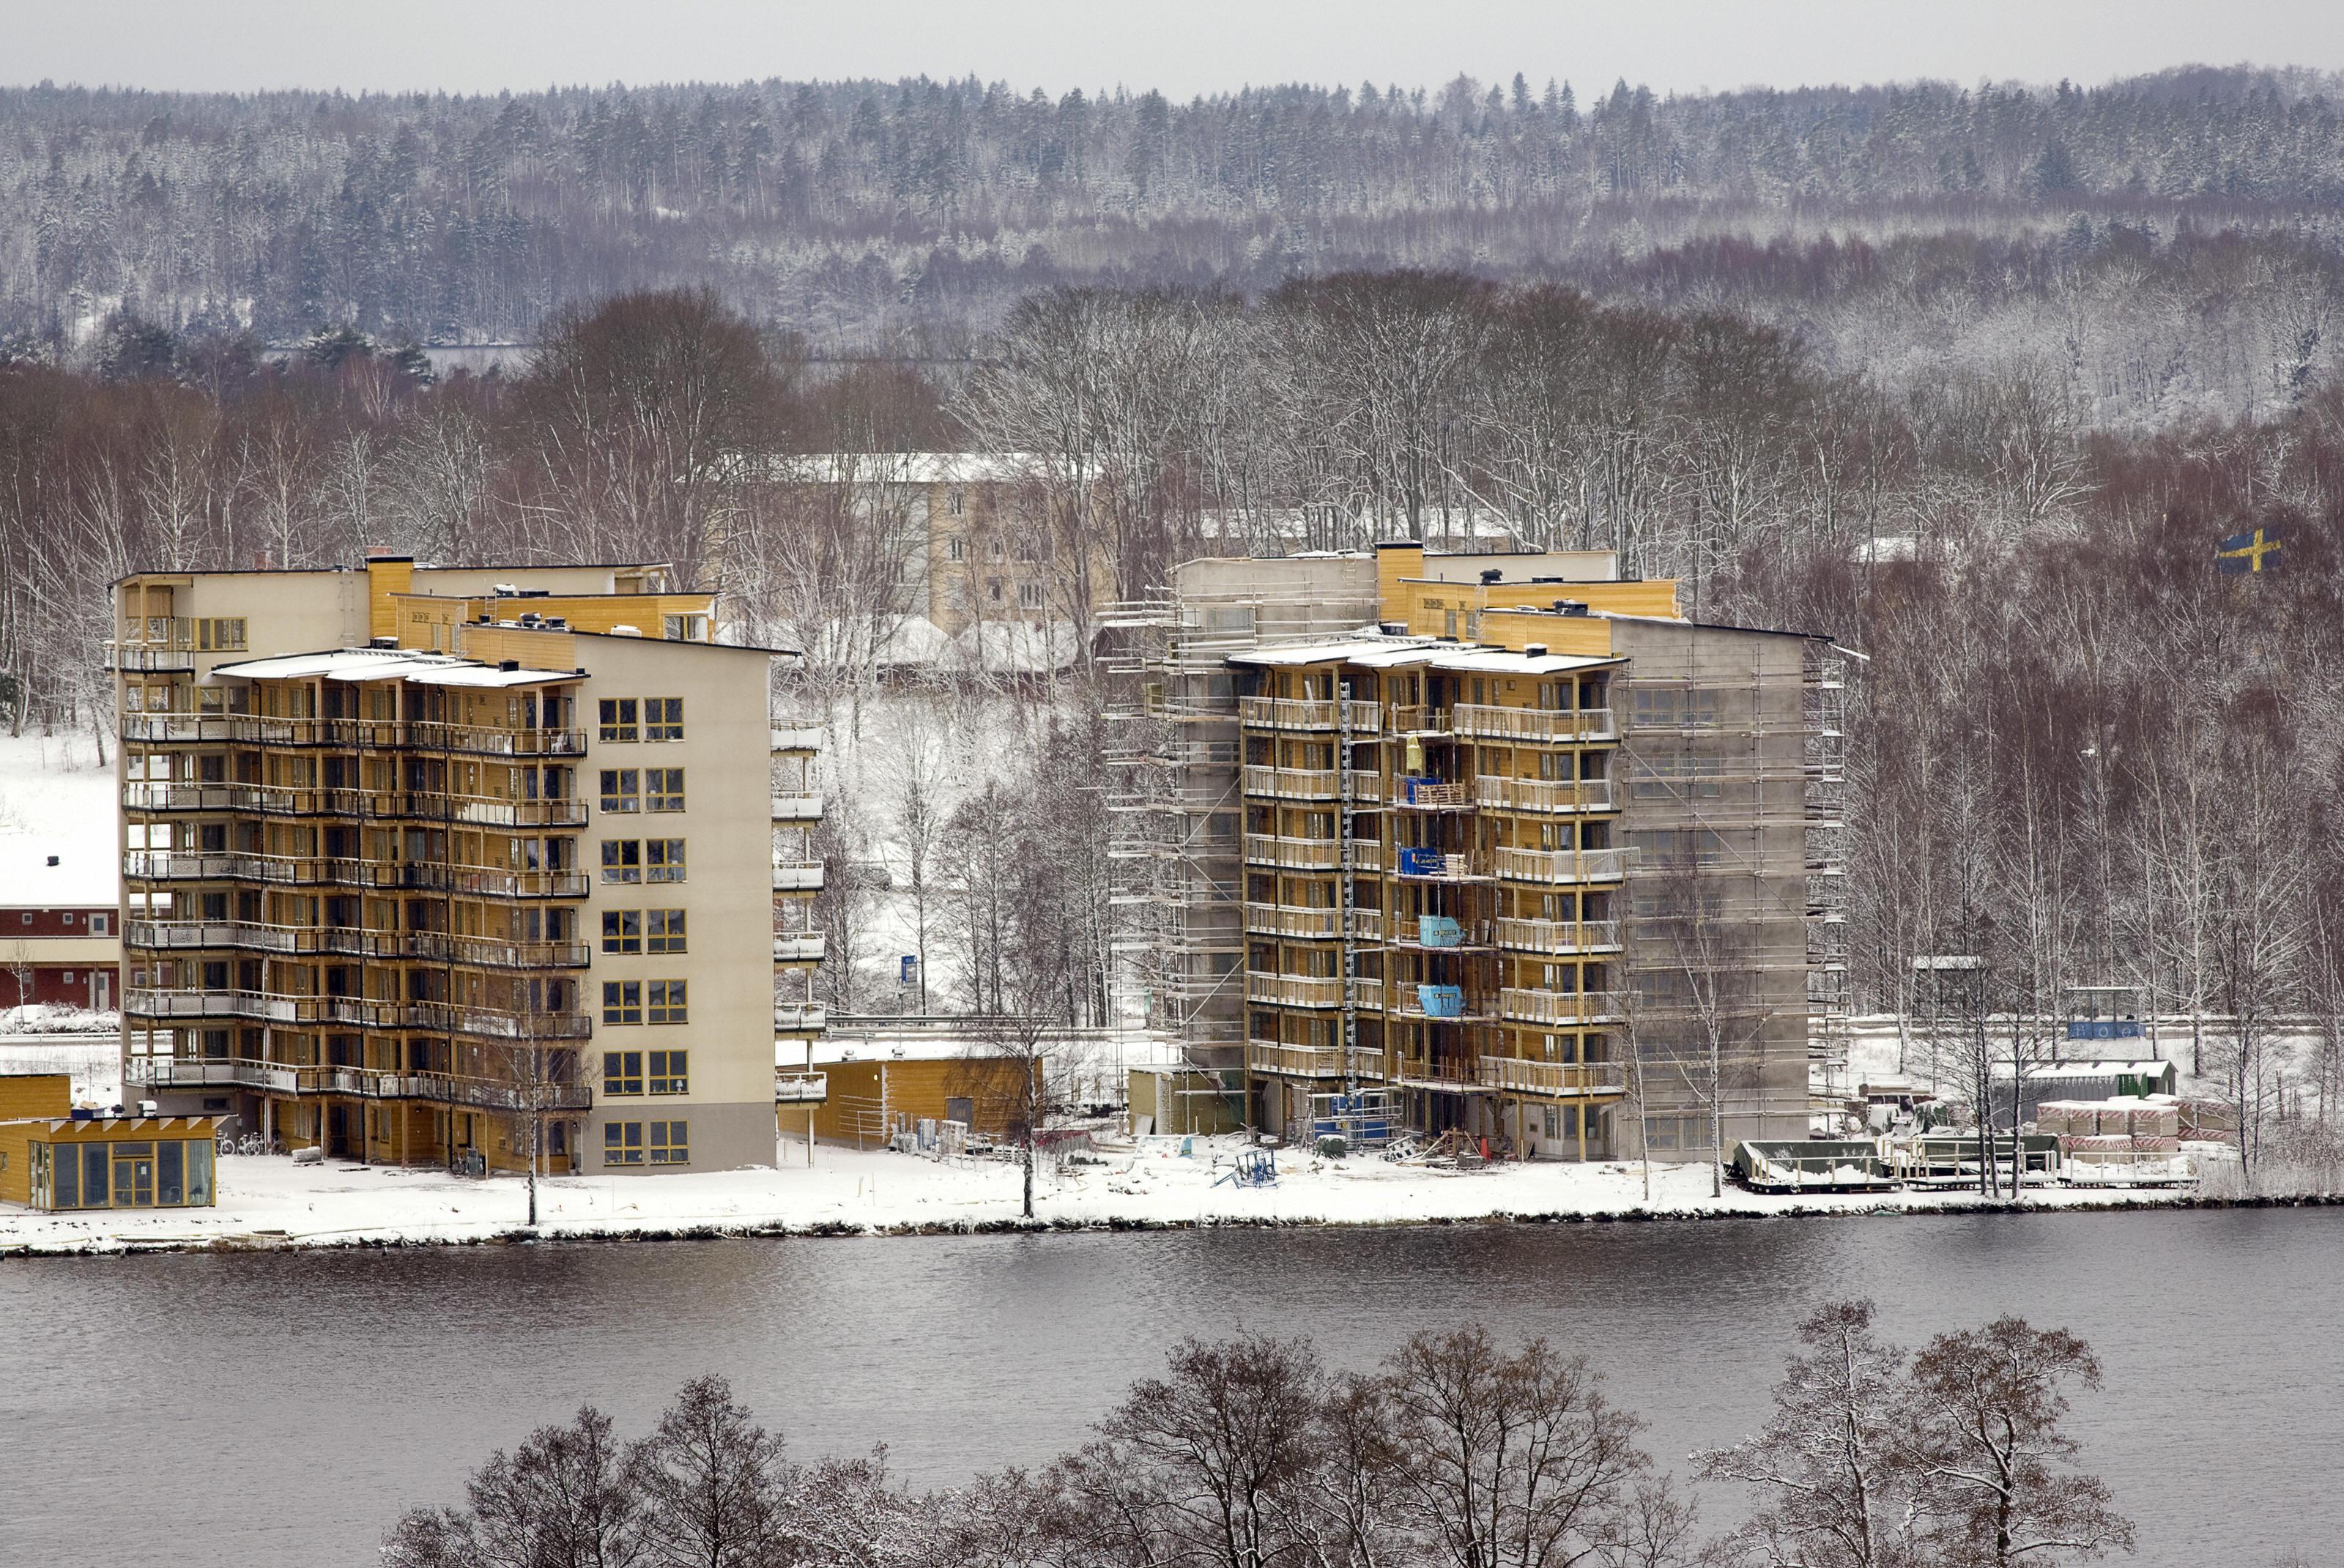 Det byggs för lite i Sverige. Nu varnar Konjunkturinstitutet för att den svenska bostadsbubblan kan spricka. (Foto: Sophie Mongalvys/AFP/Getty Image)